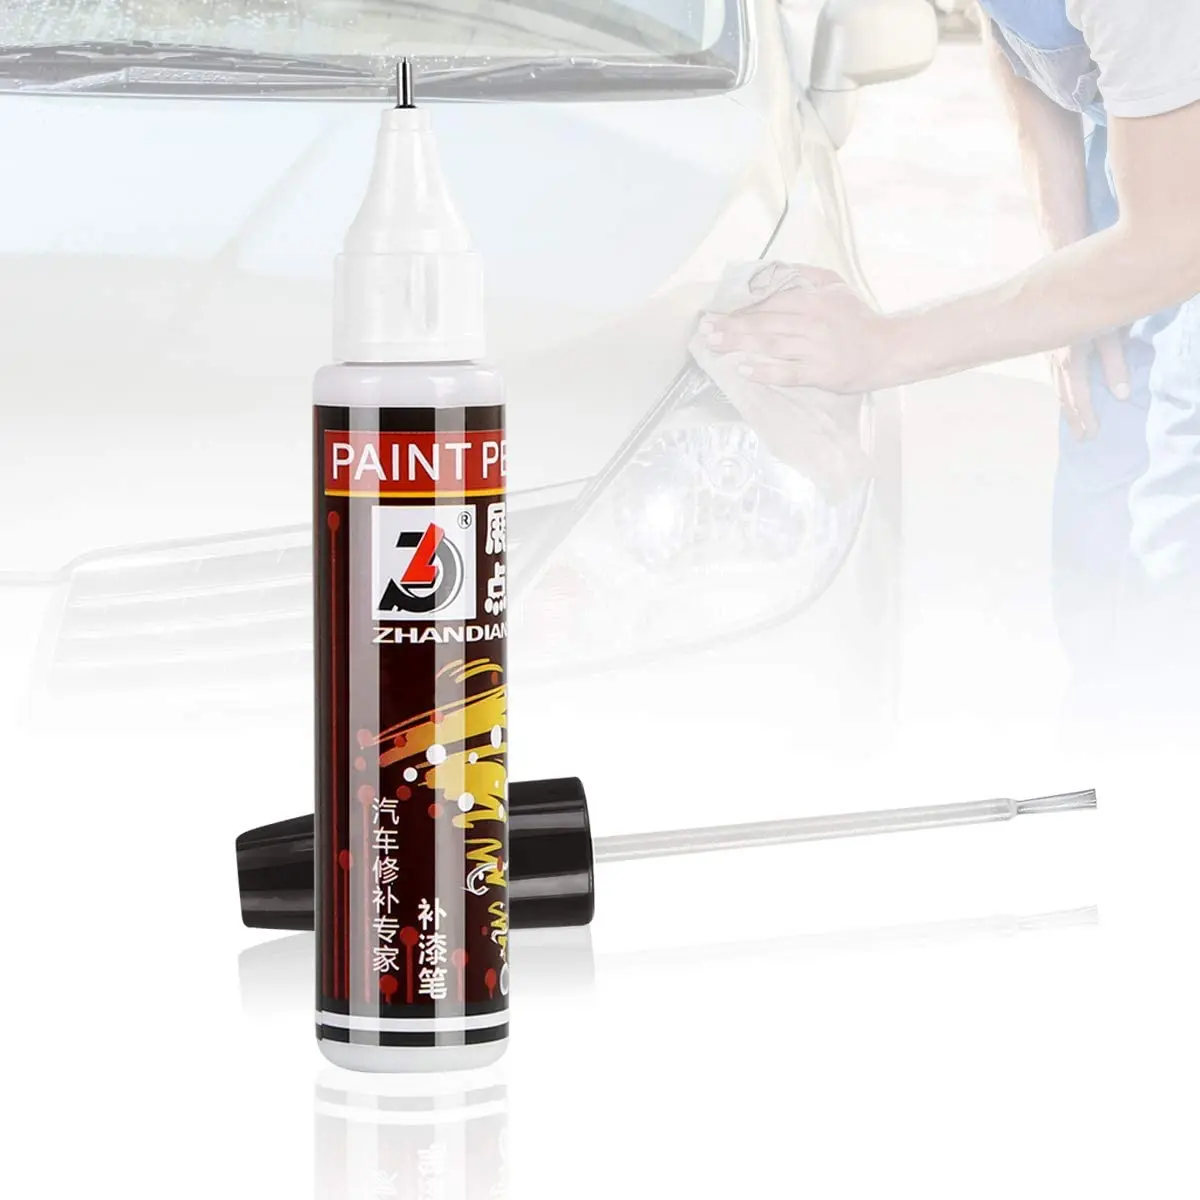 Car Paint Restorer Pen Paint Scratch Remover For Vehicles Car